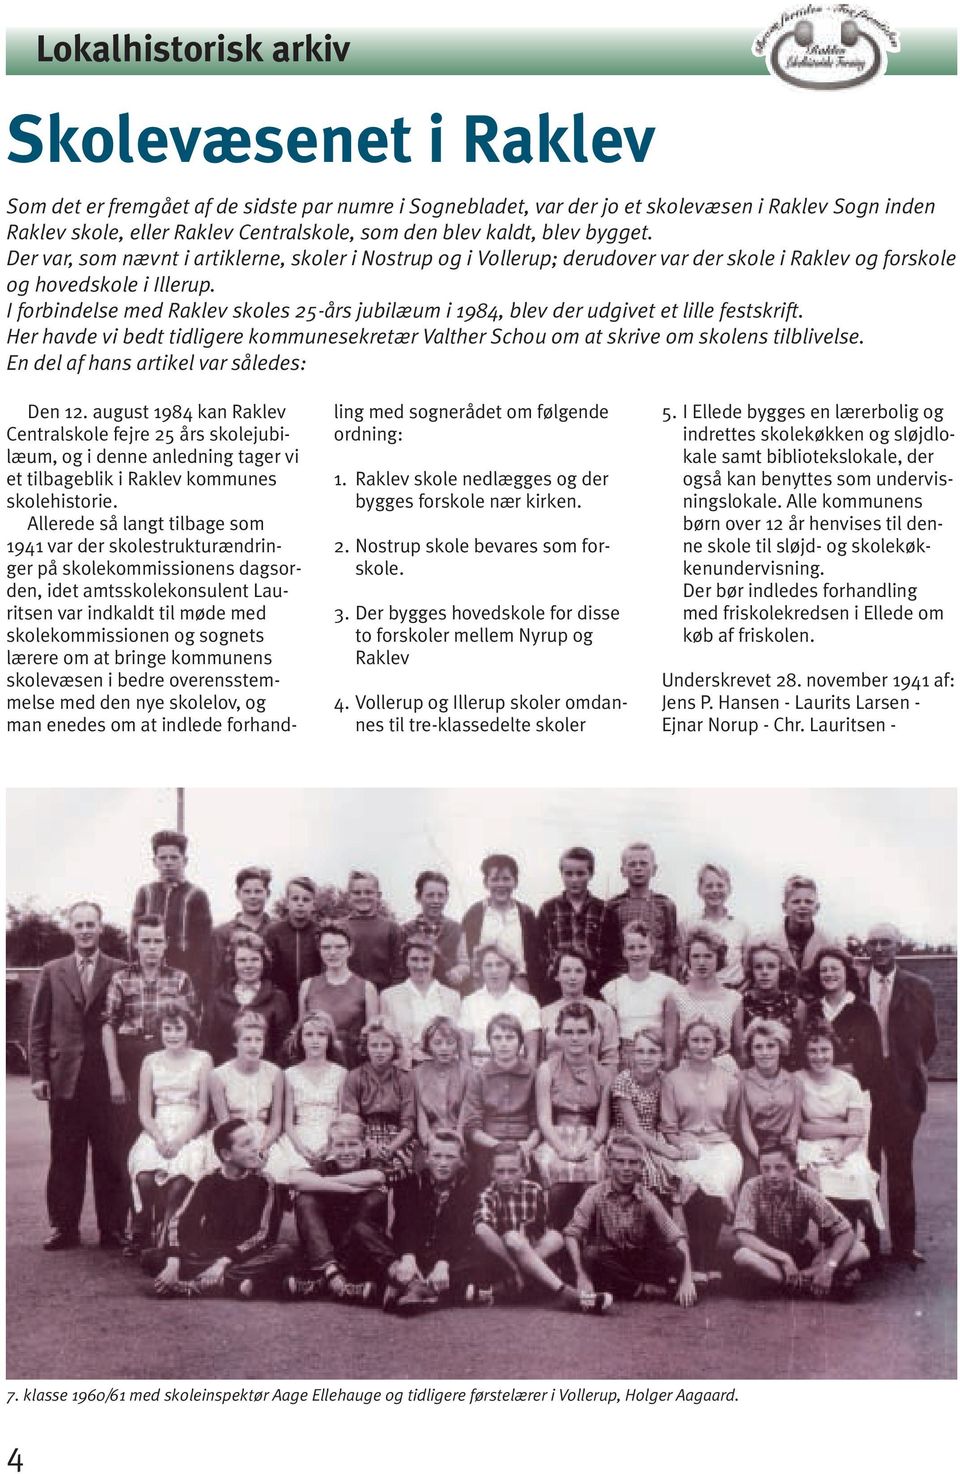 I forbindelse med Raklev skoles 25-års jubilæum i 1984, blev der udgivet et lille festskrift. Her havde vi bedt tidligere kommunesekretær Valther Schou om at skrive om skolens tilblivelse.